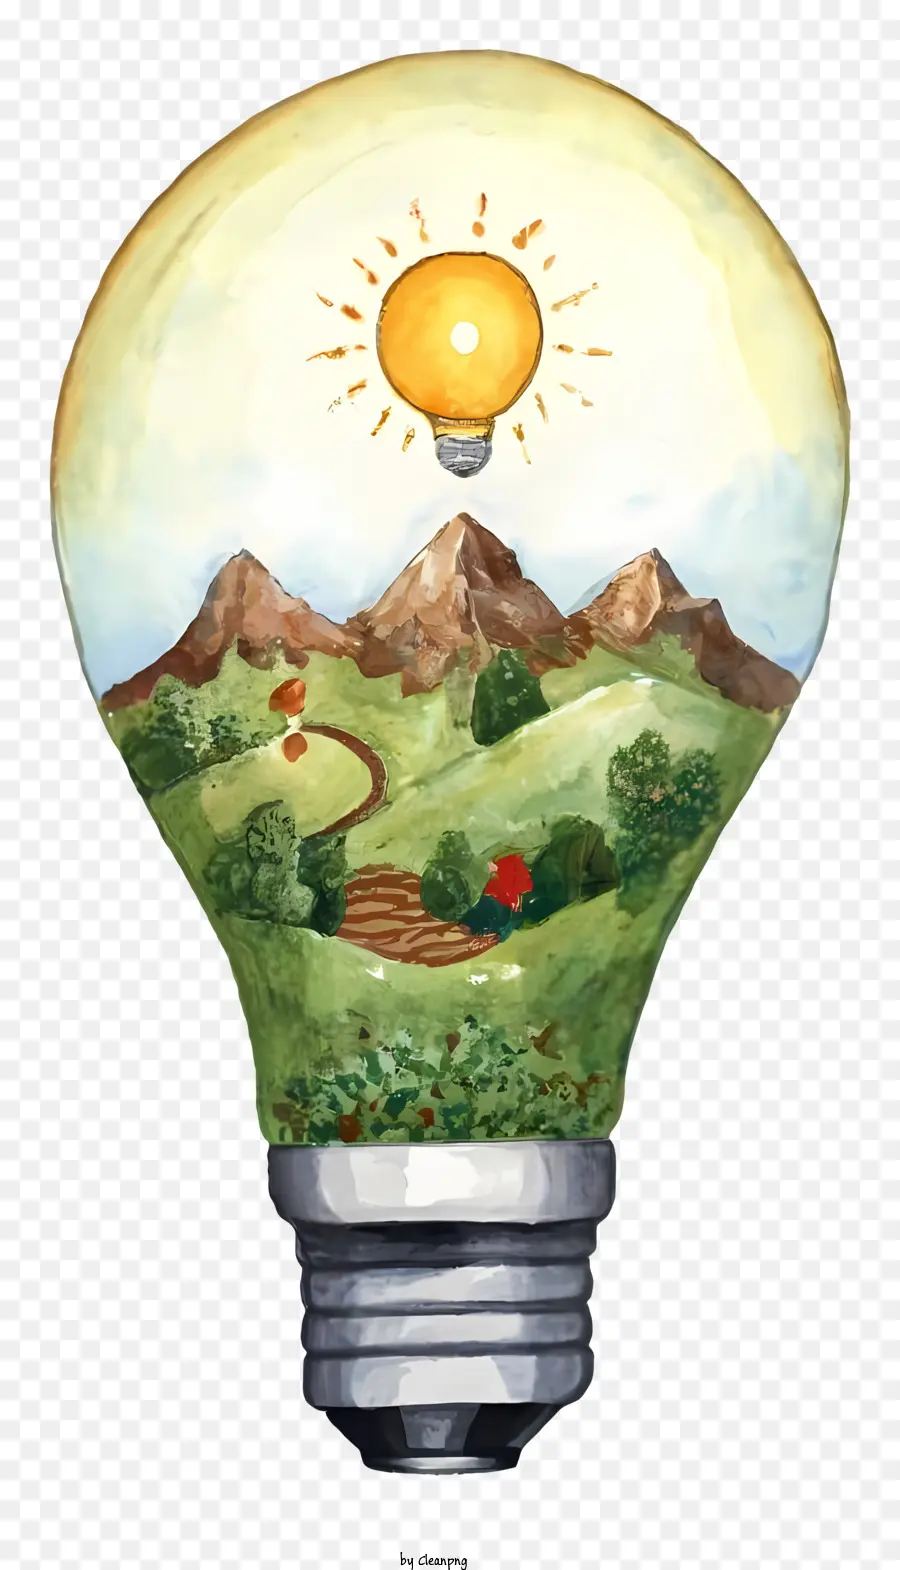 bóng đèn - Bóng đèn chiếu sáng với cảnh quan màu nước tượng trưng cho sự tích cực và sáng tạo